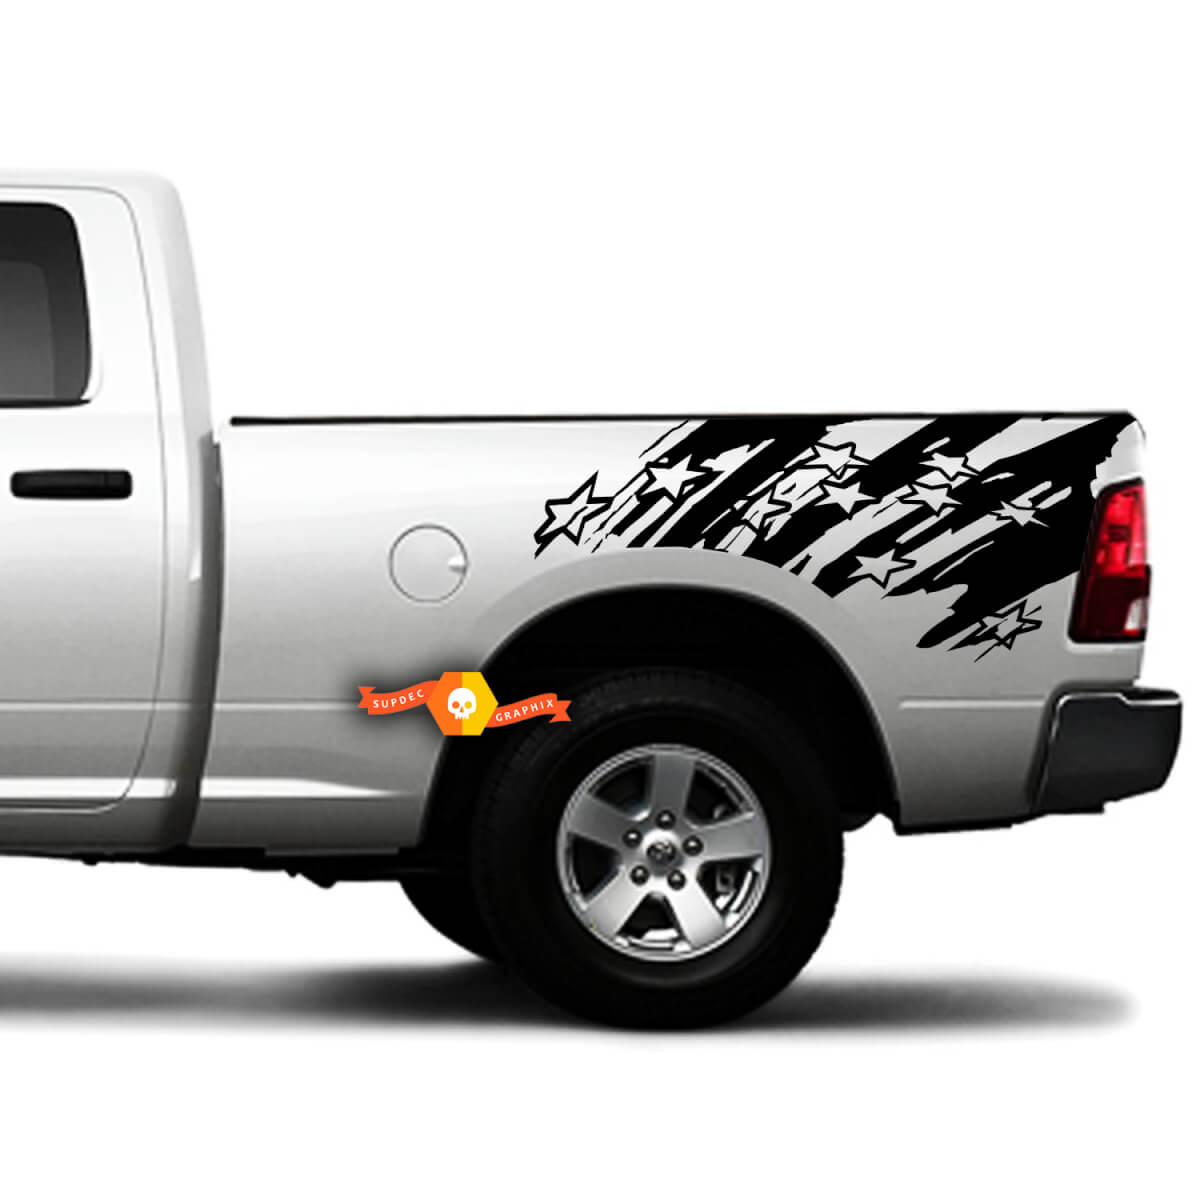 2 laterales angustiada bandera americana estrellas SUV grunge lateral camioneta camión vehículo camión vinilo gráfico calcomanía